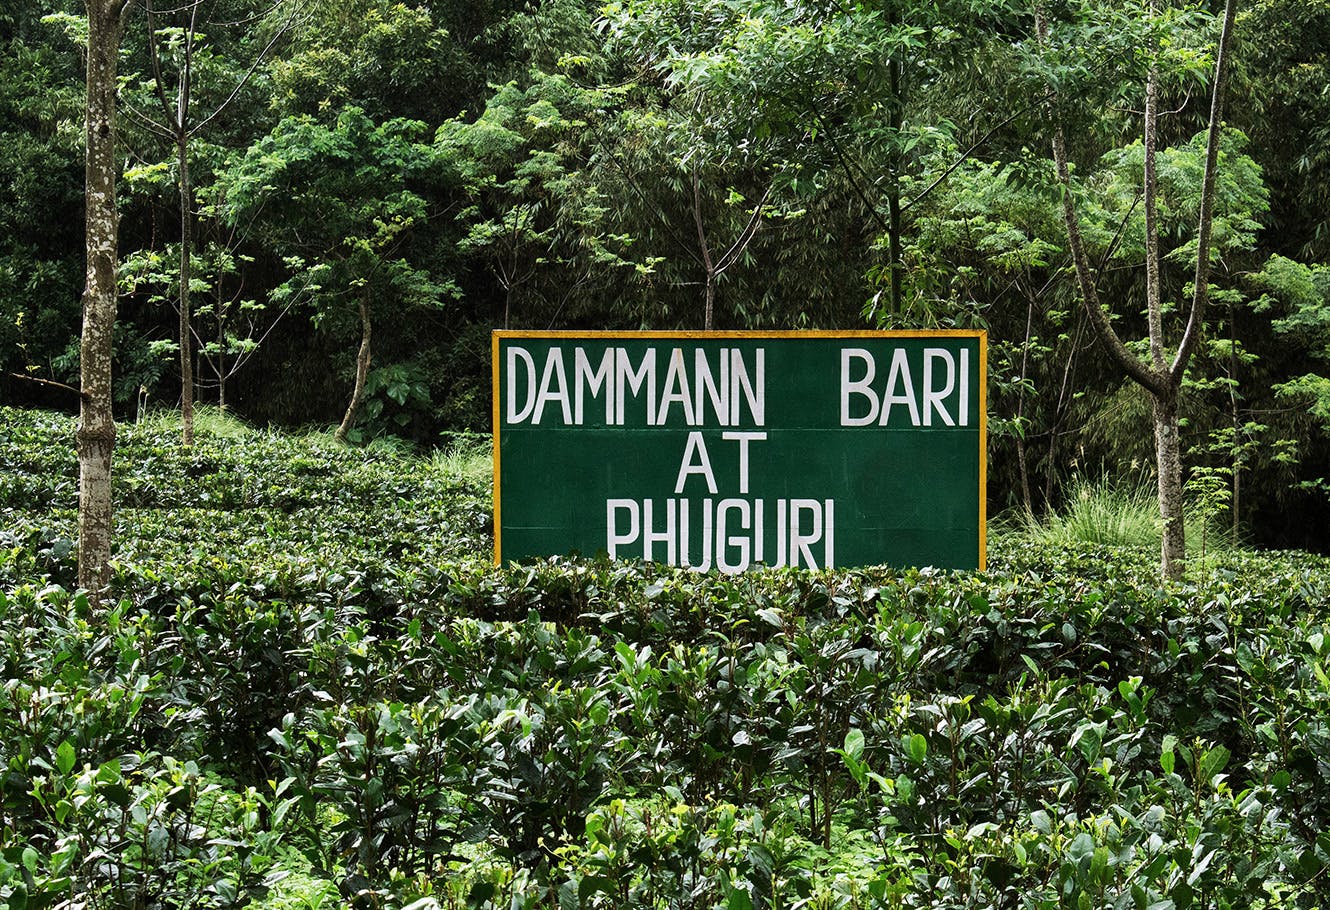 Parcelle exclusive DAMMANN du jardin Phuguri "Darjeeling DAMMANN Phuguri N°612".